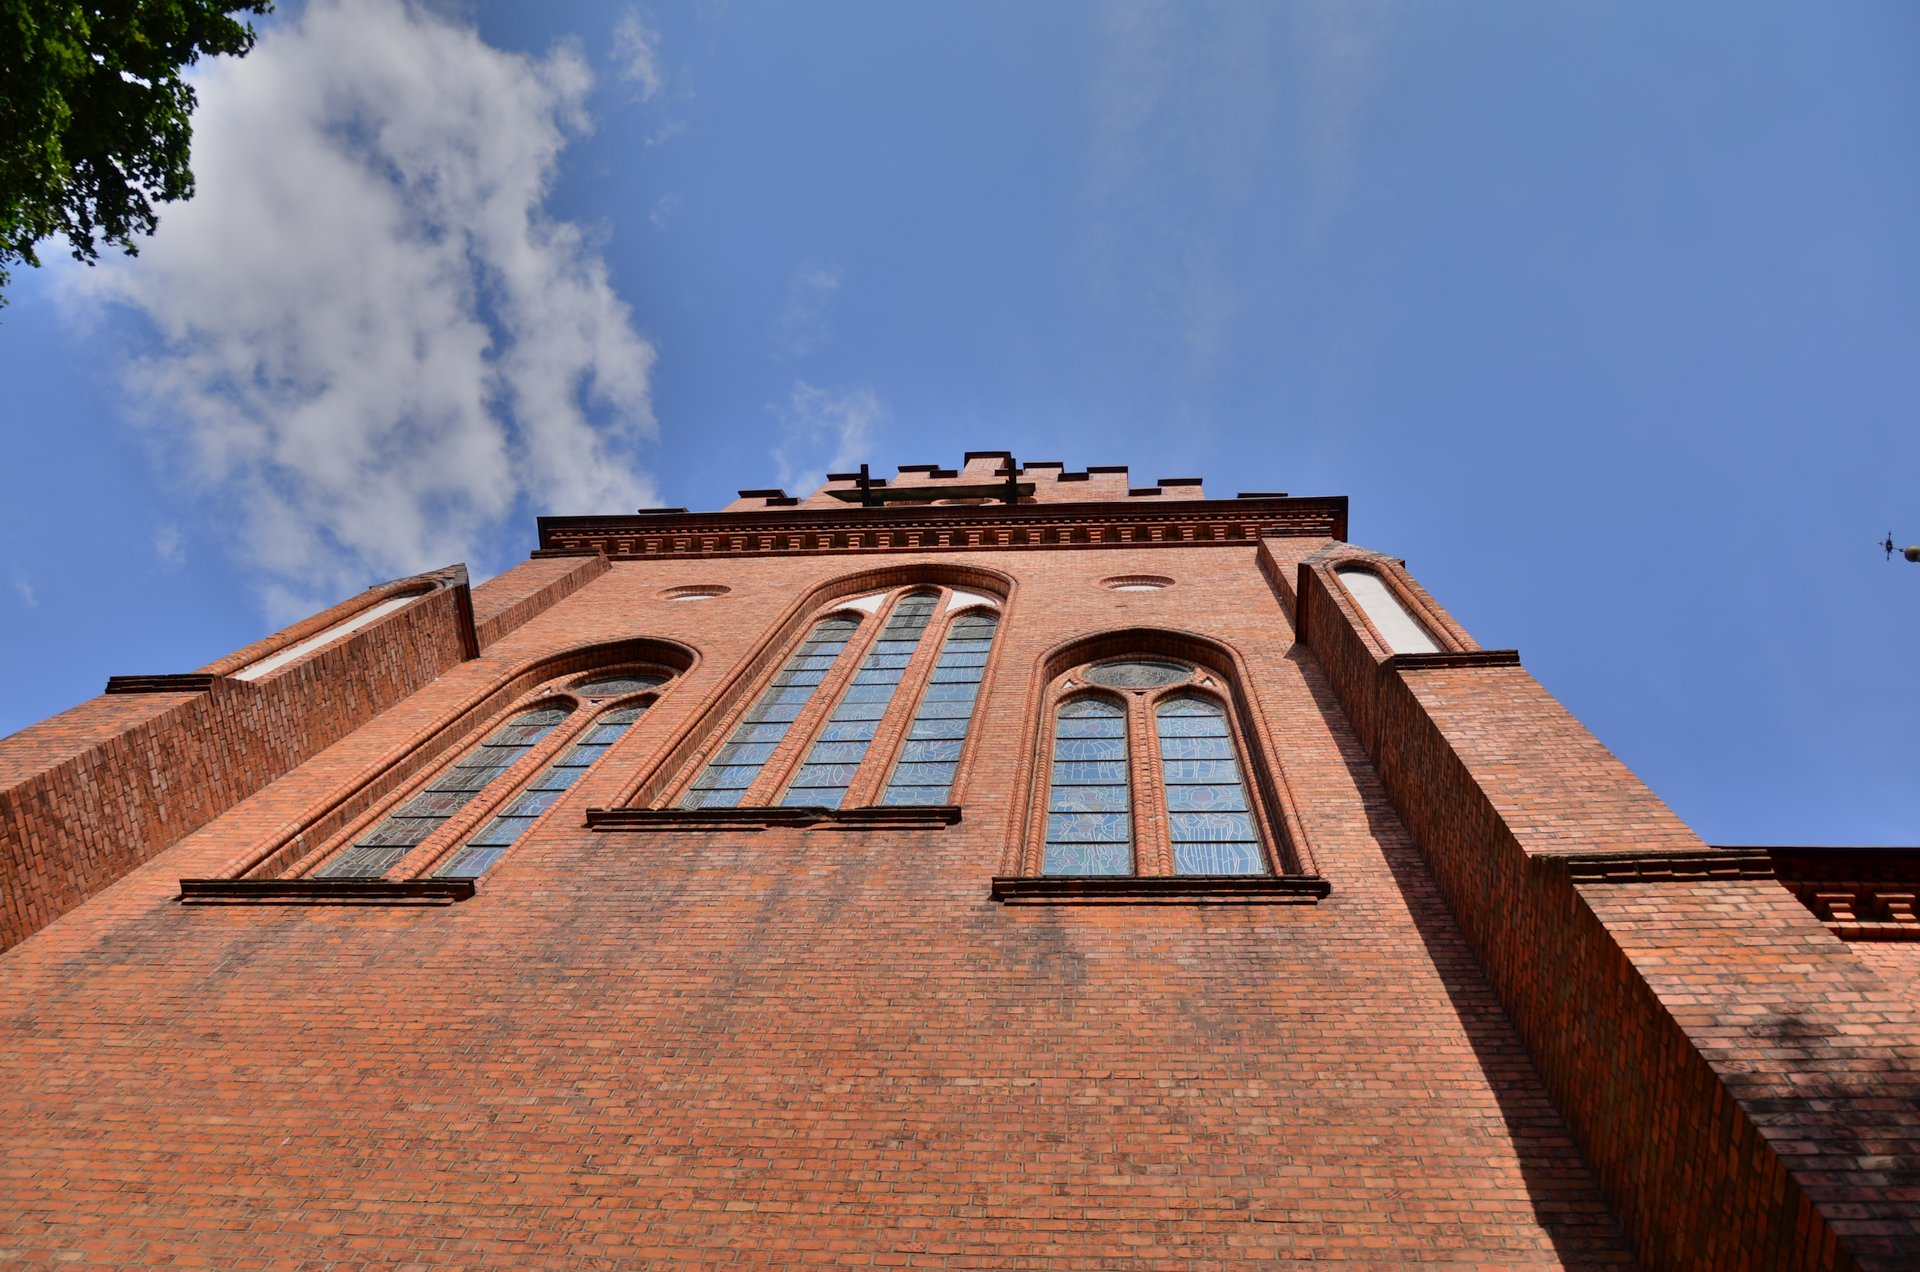 Białystok katedra fara bazylika mniejsza kościół religia katolicyzmfree photo darmowe zdjęcie